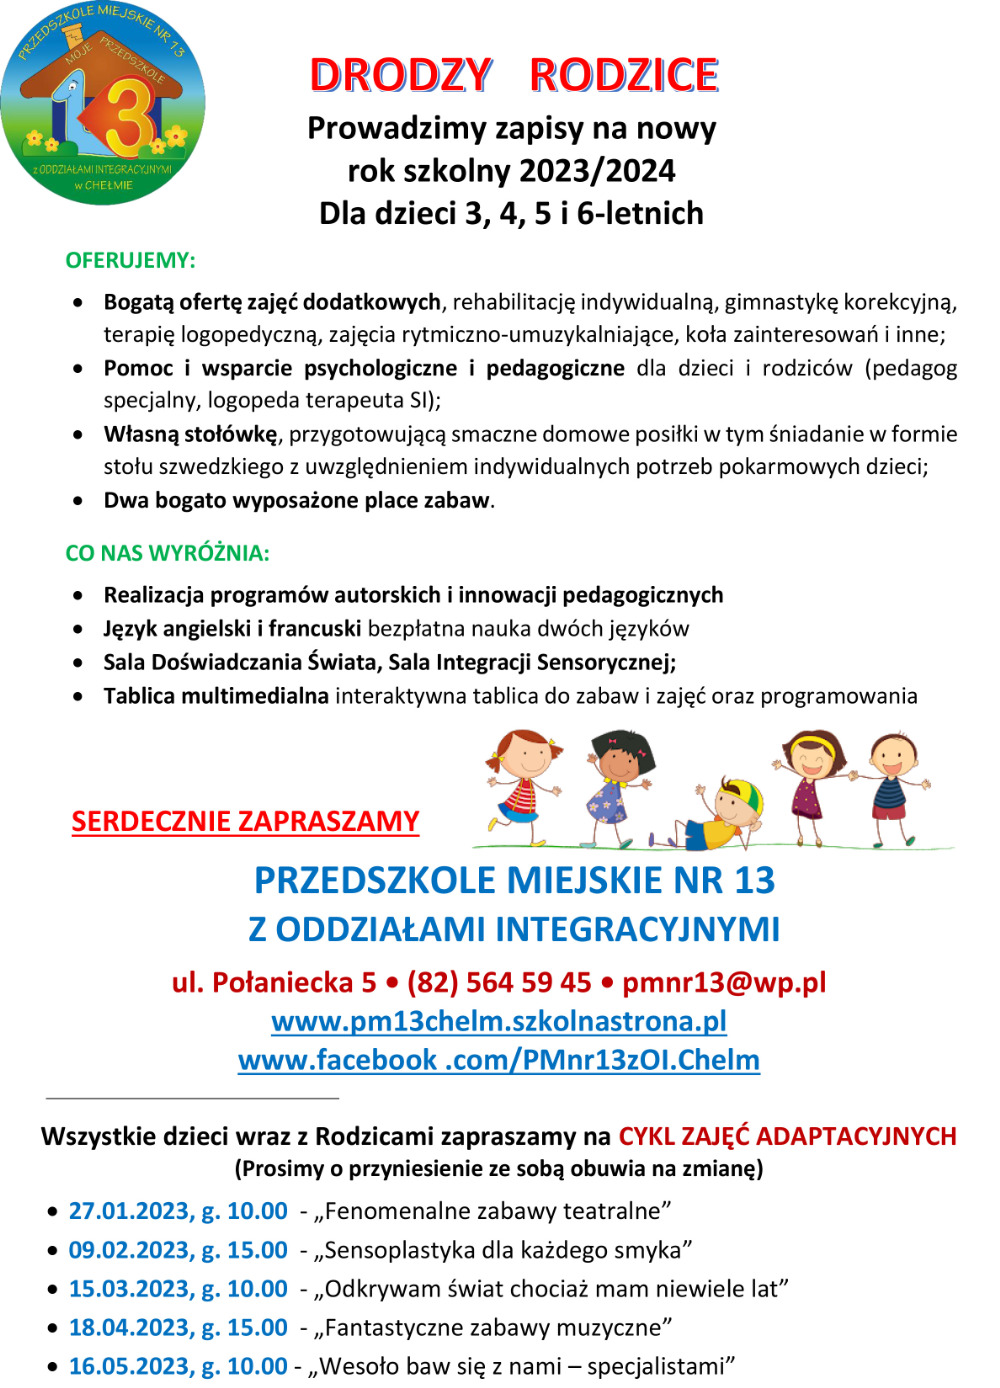 Plakat informujący o zapisach i ofercie Przedszkola Miejskiego nr 13 z Oddziałami Integracyjnymi w Chełmie.